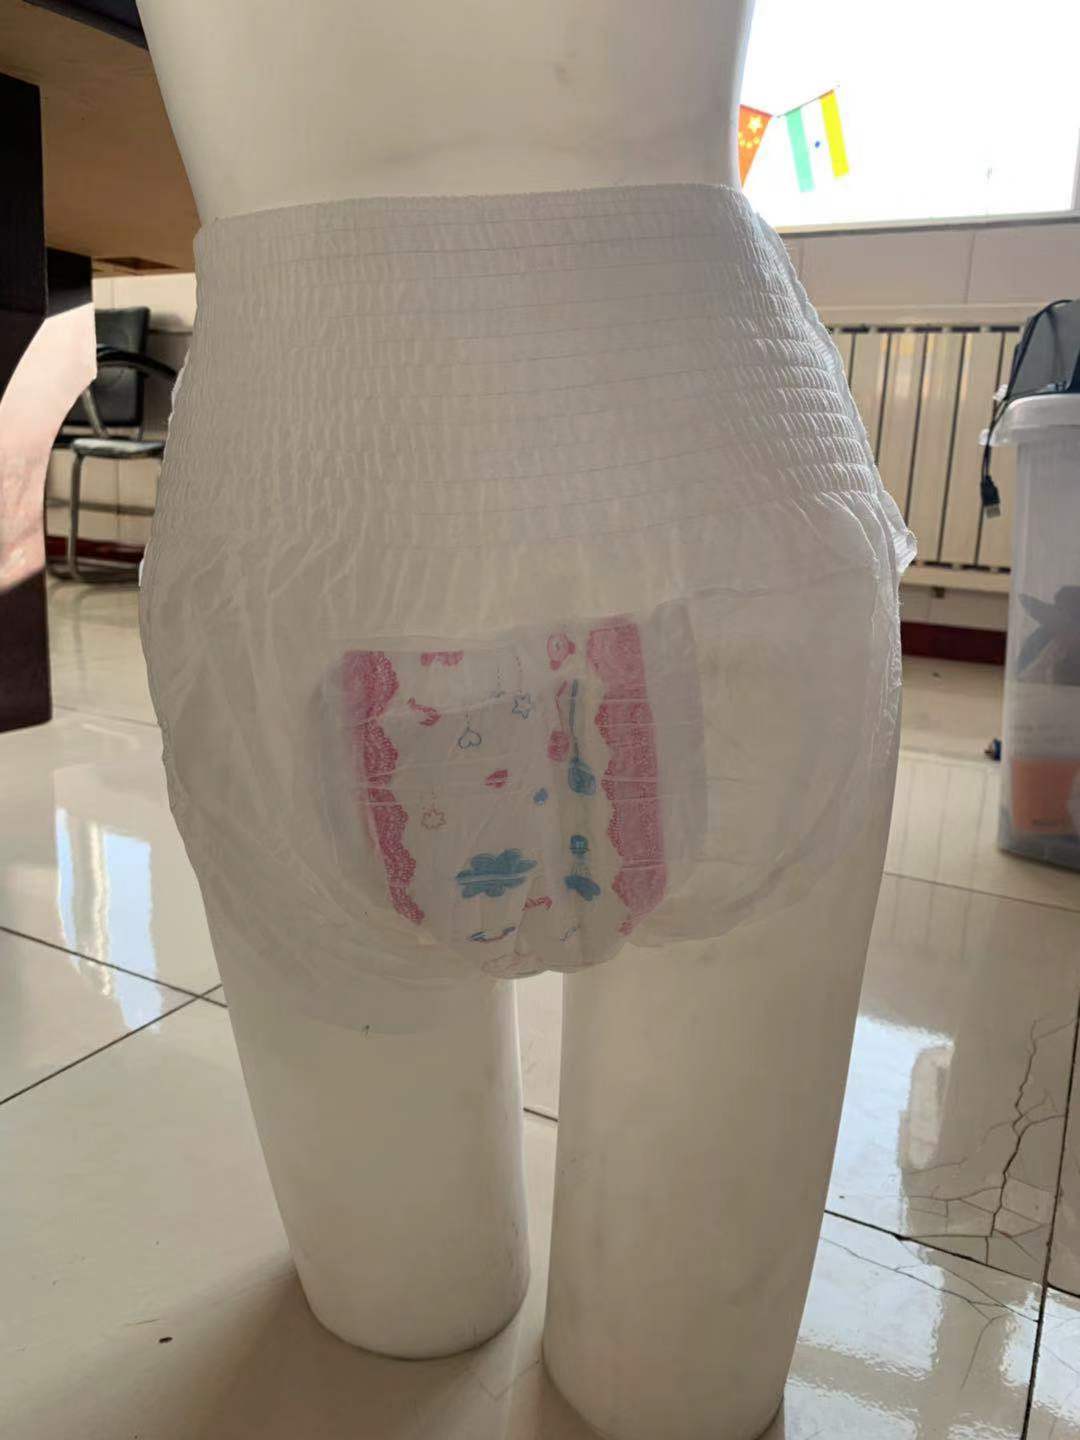 Fabbricazione cinese di pantaloni mestruali